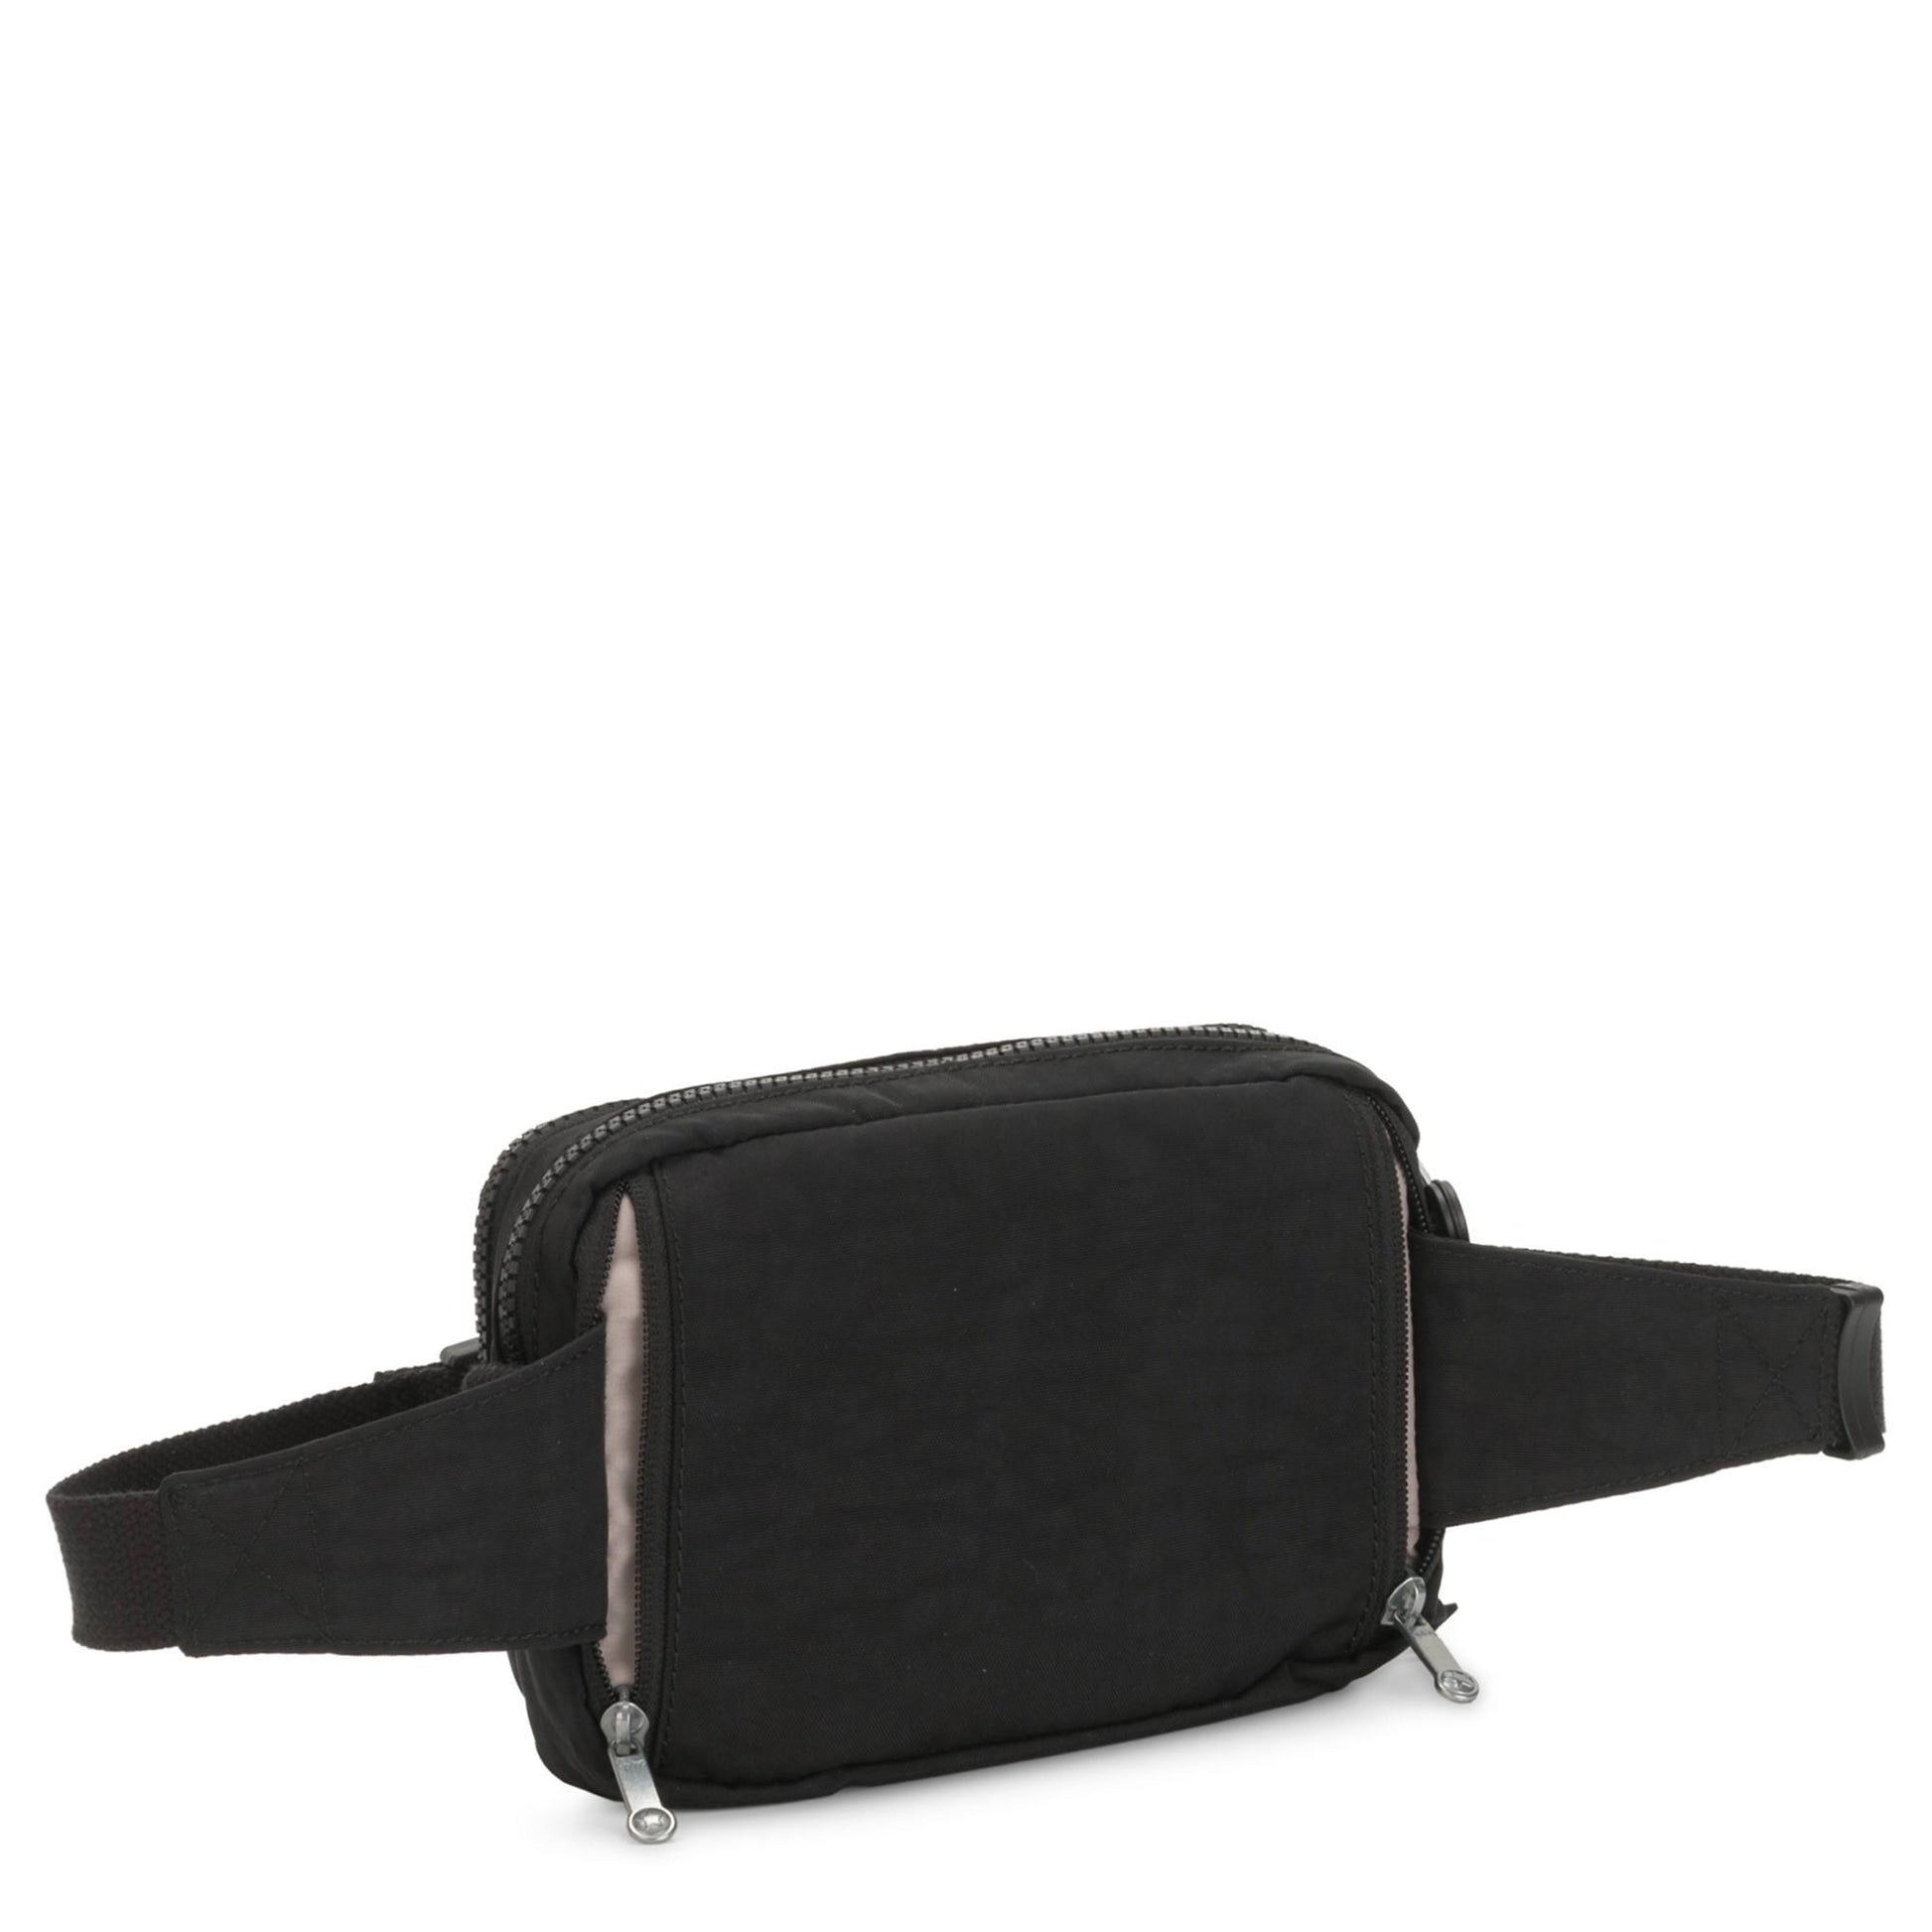 Kipling Abanu Multi Convertible Crossbody Bag - Black Noir 